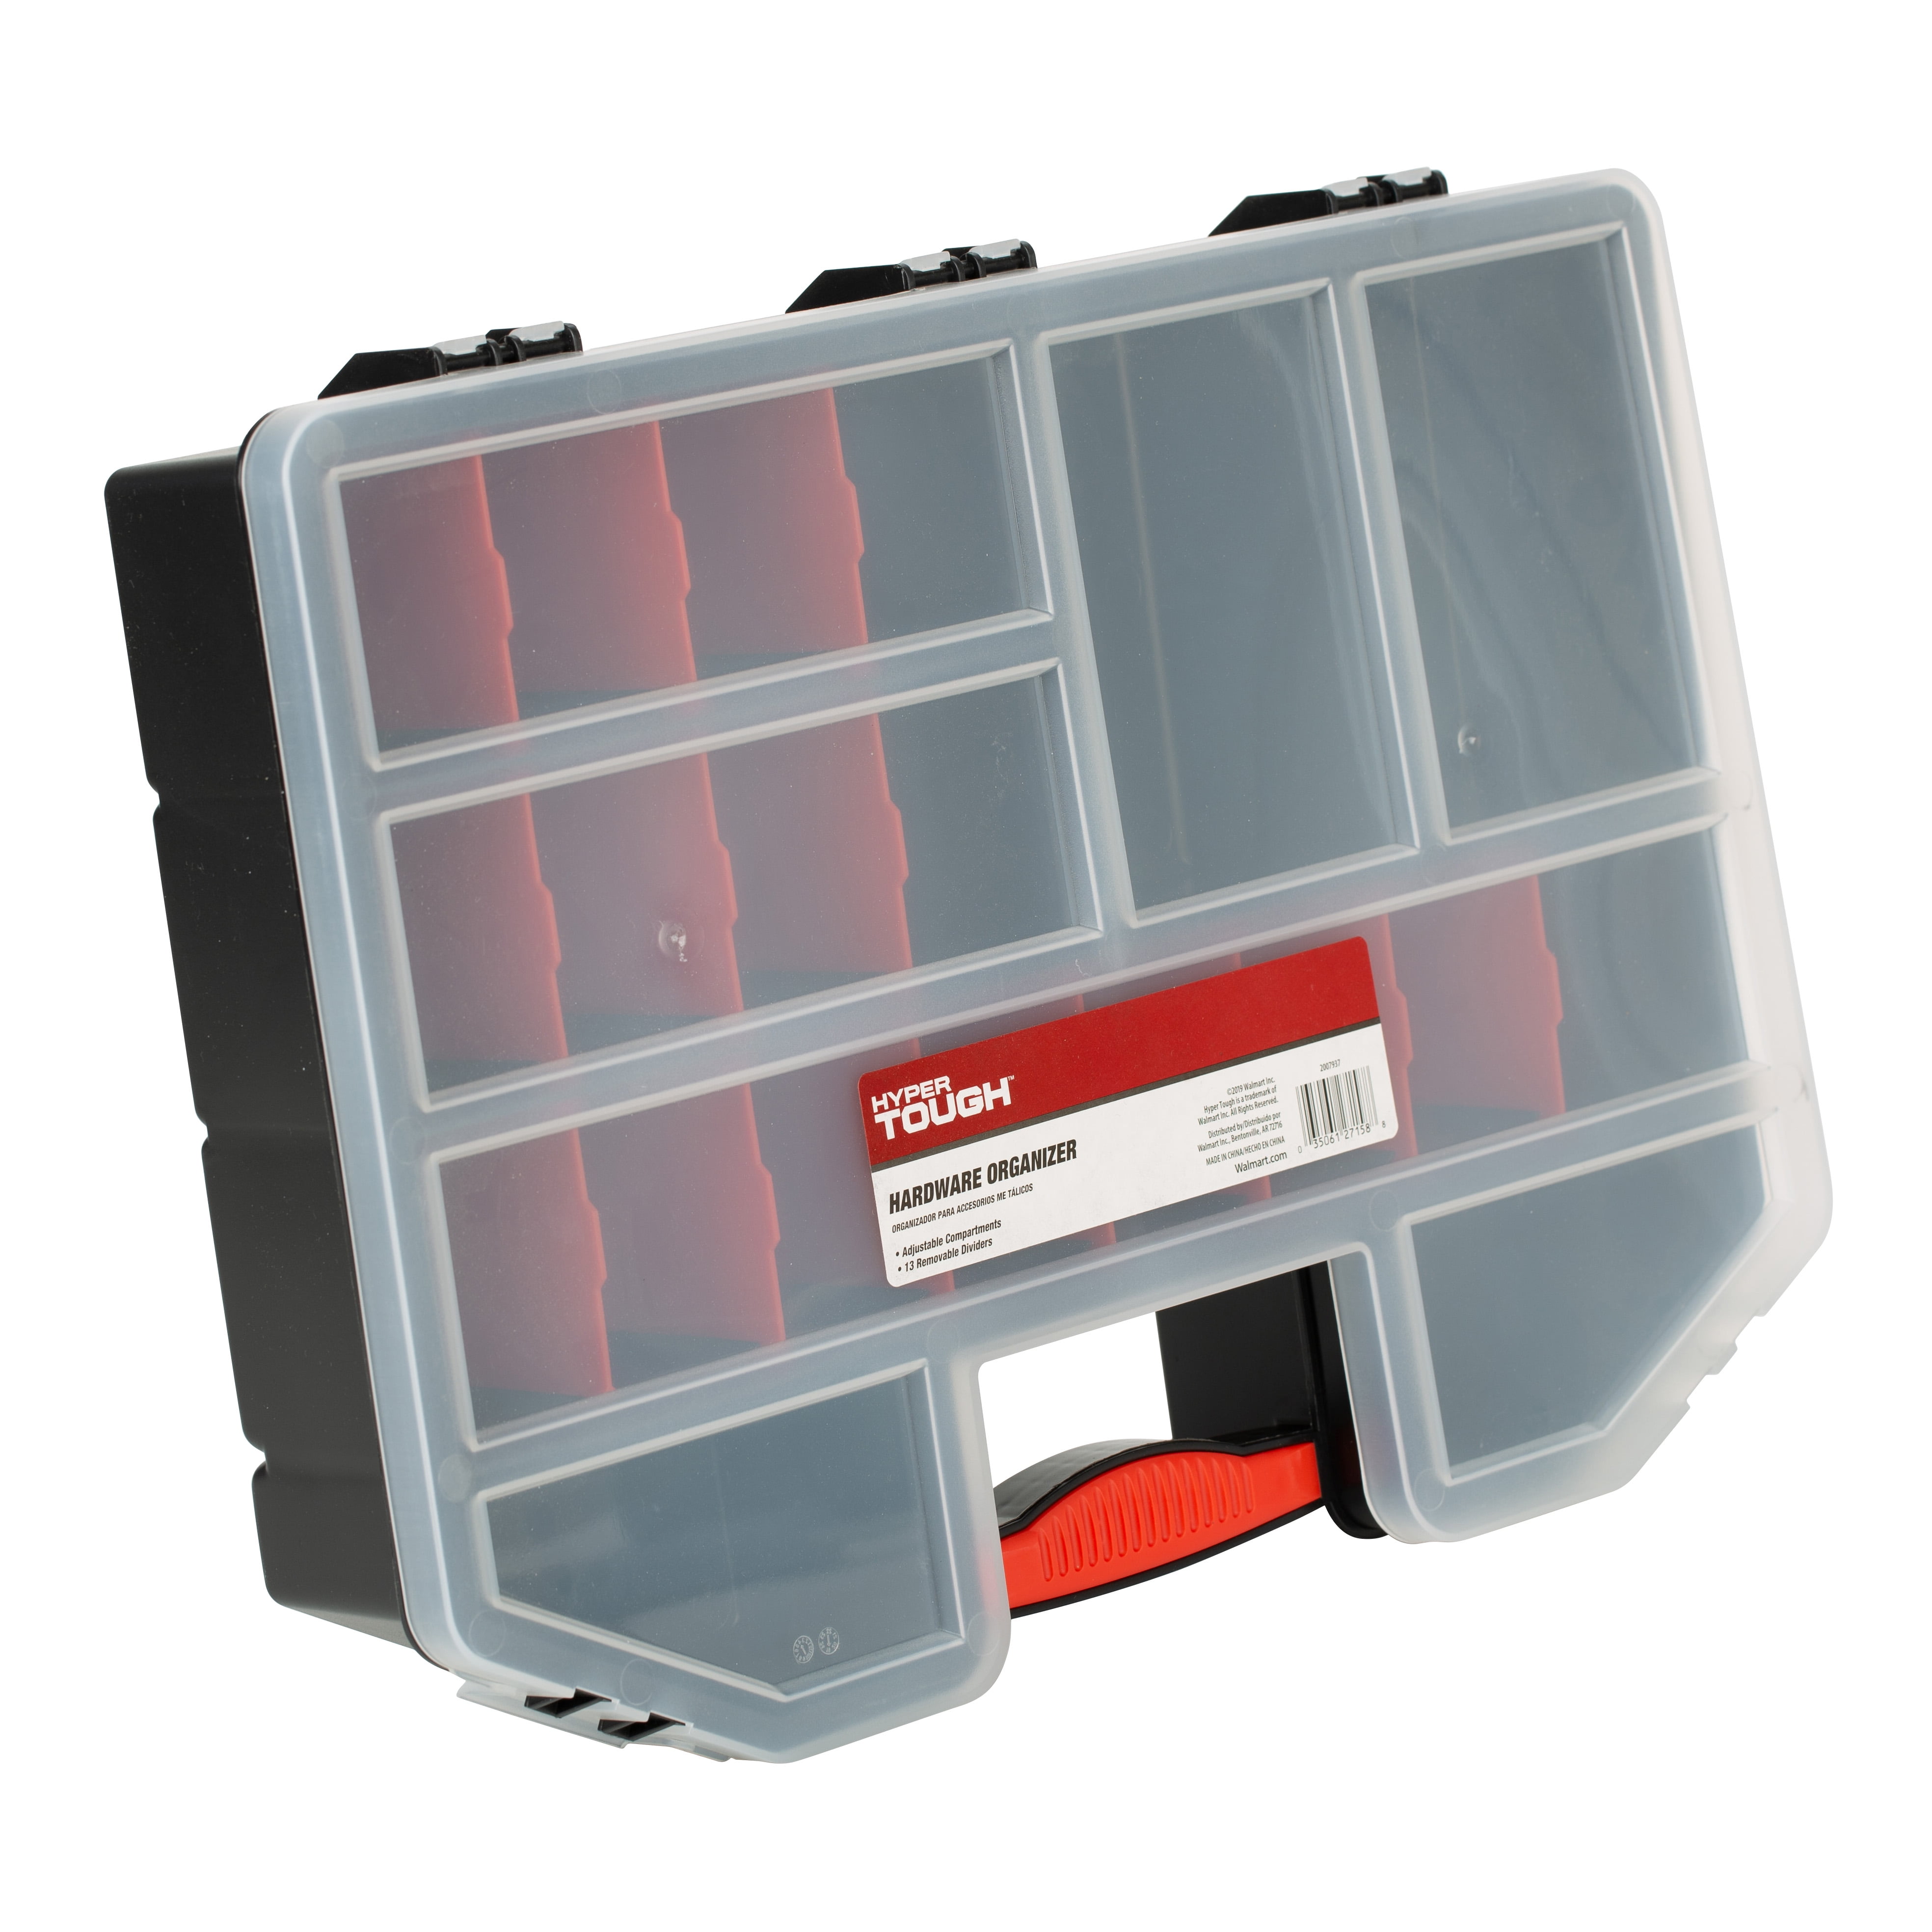 Hardware and Small Parts Organizer Box - China Parts Storage Box and Parts  Organizer Box price